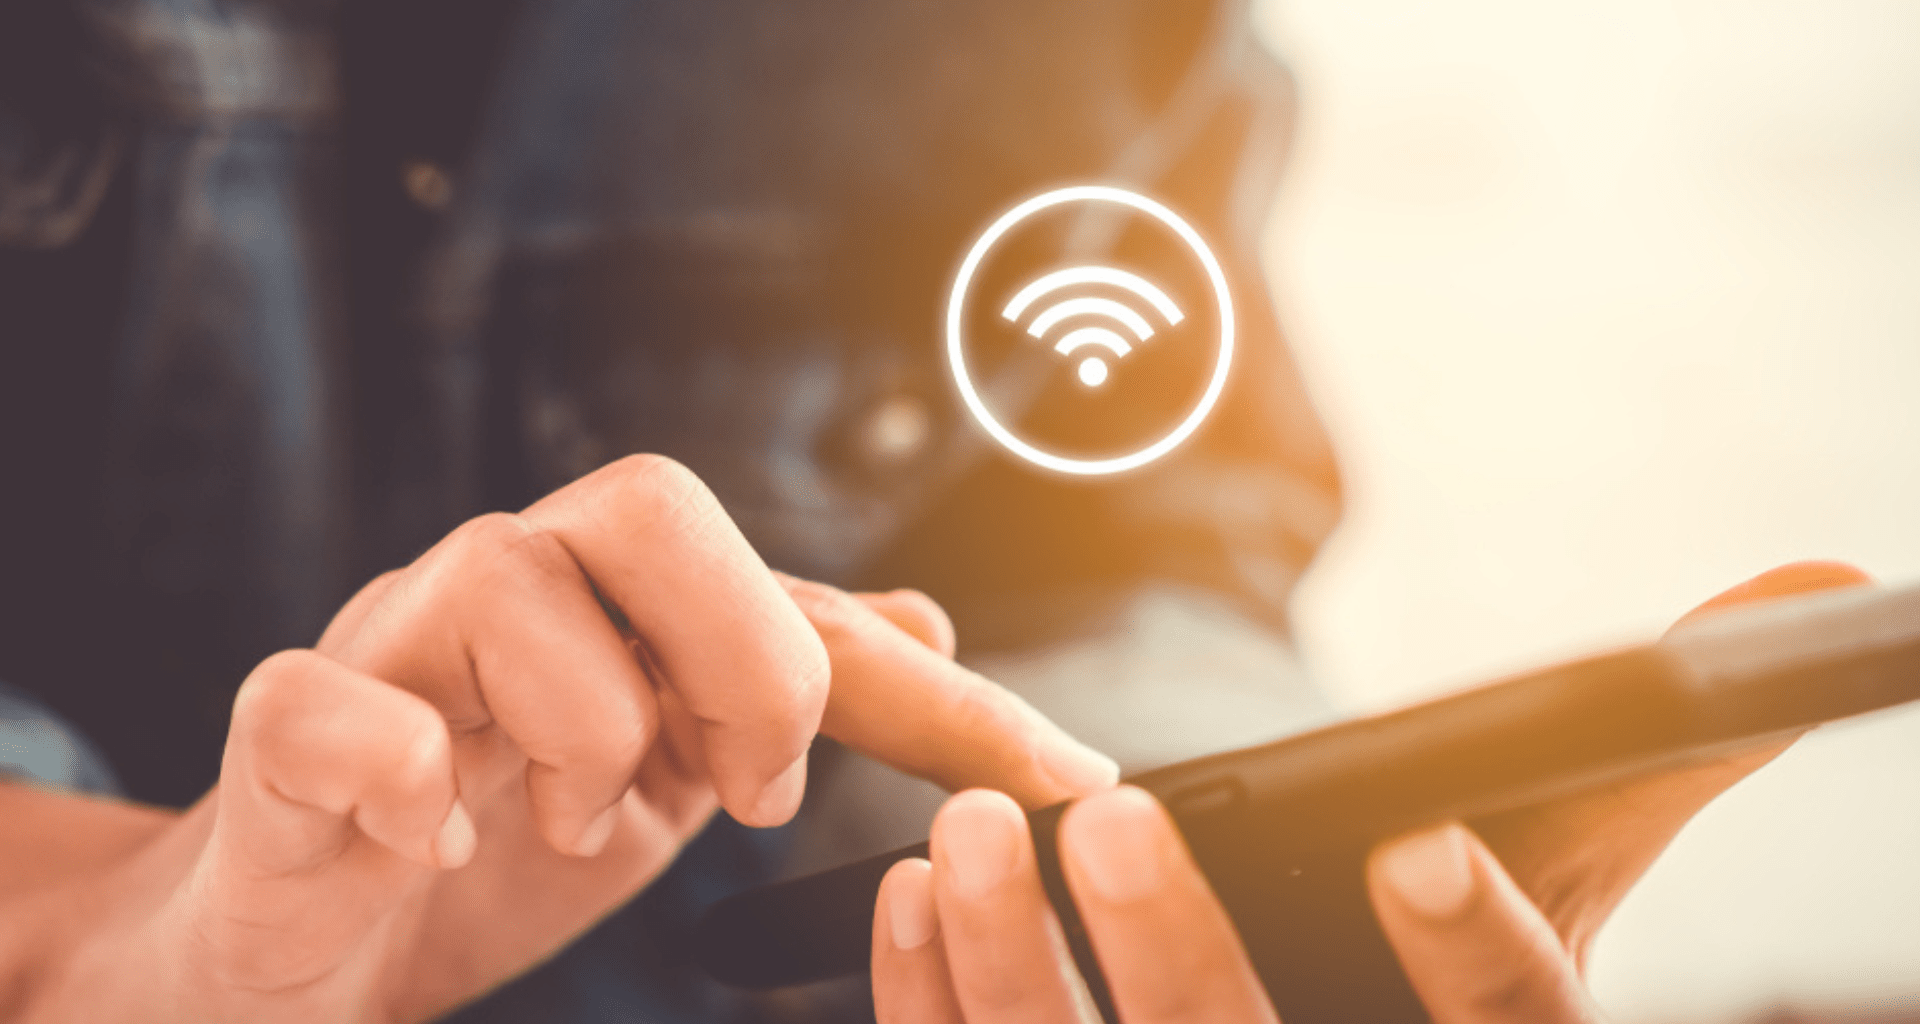 Altere a senha do seu Wi-Fi no home office em minutos usando o celular